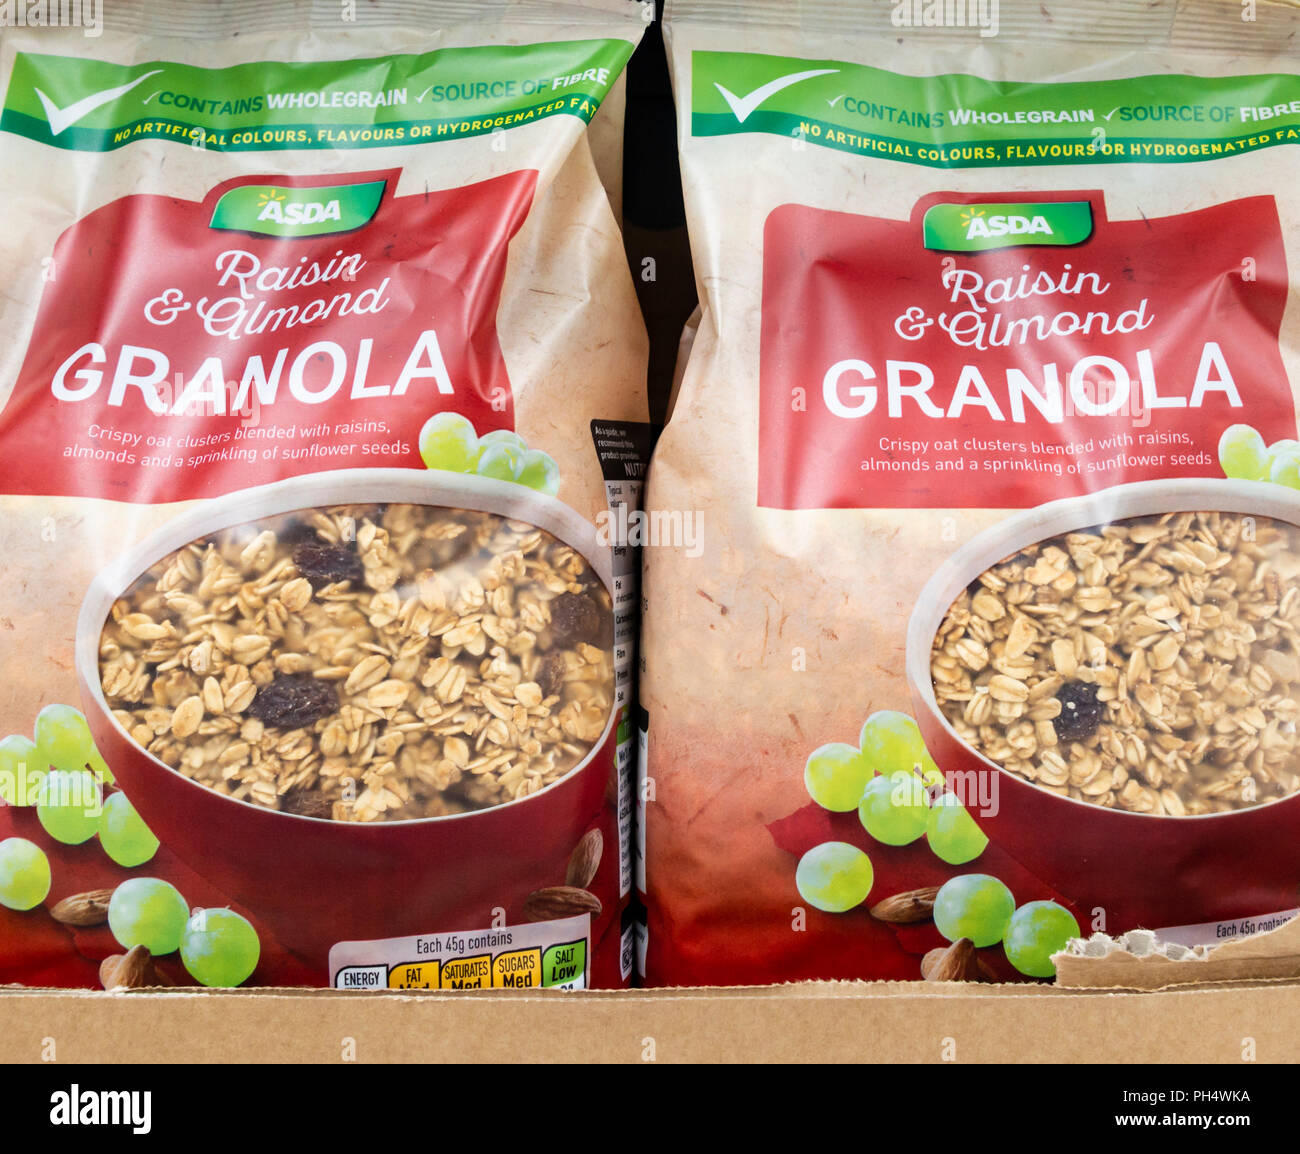 Asda marca propia Granola cereales para el desayuno en el supermercado Asda. UK Foto de stock